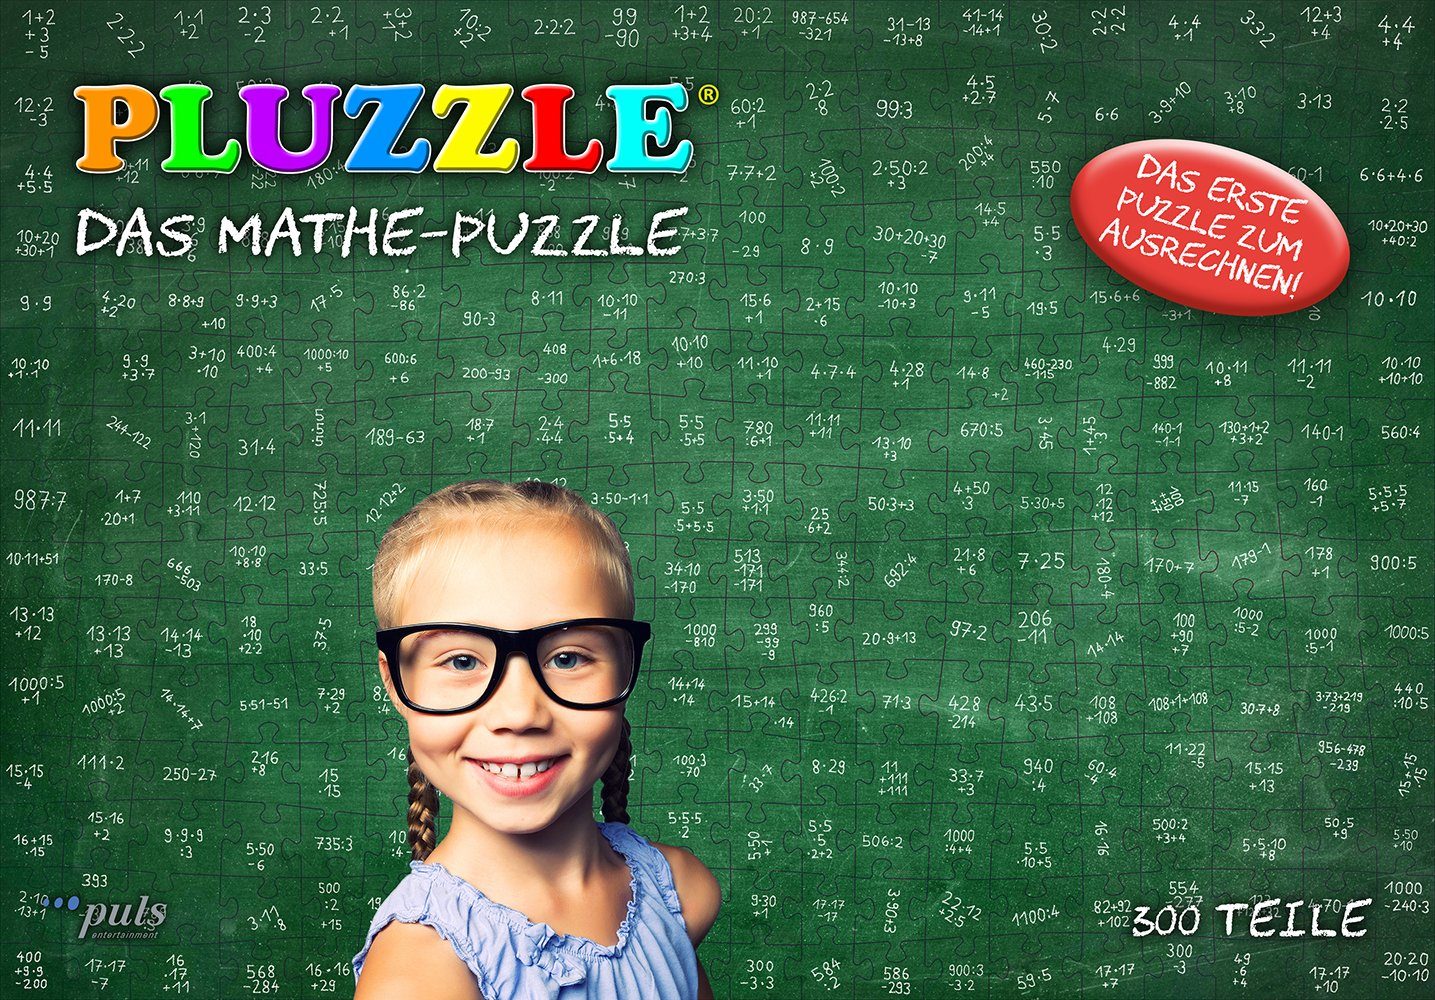 PLUZZLE, Puzzle entertainment puls 300 Puzzleteile